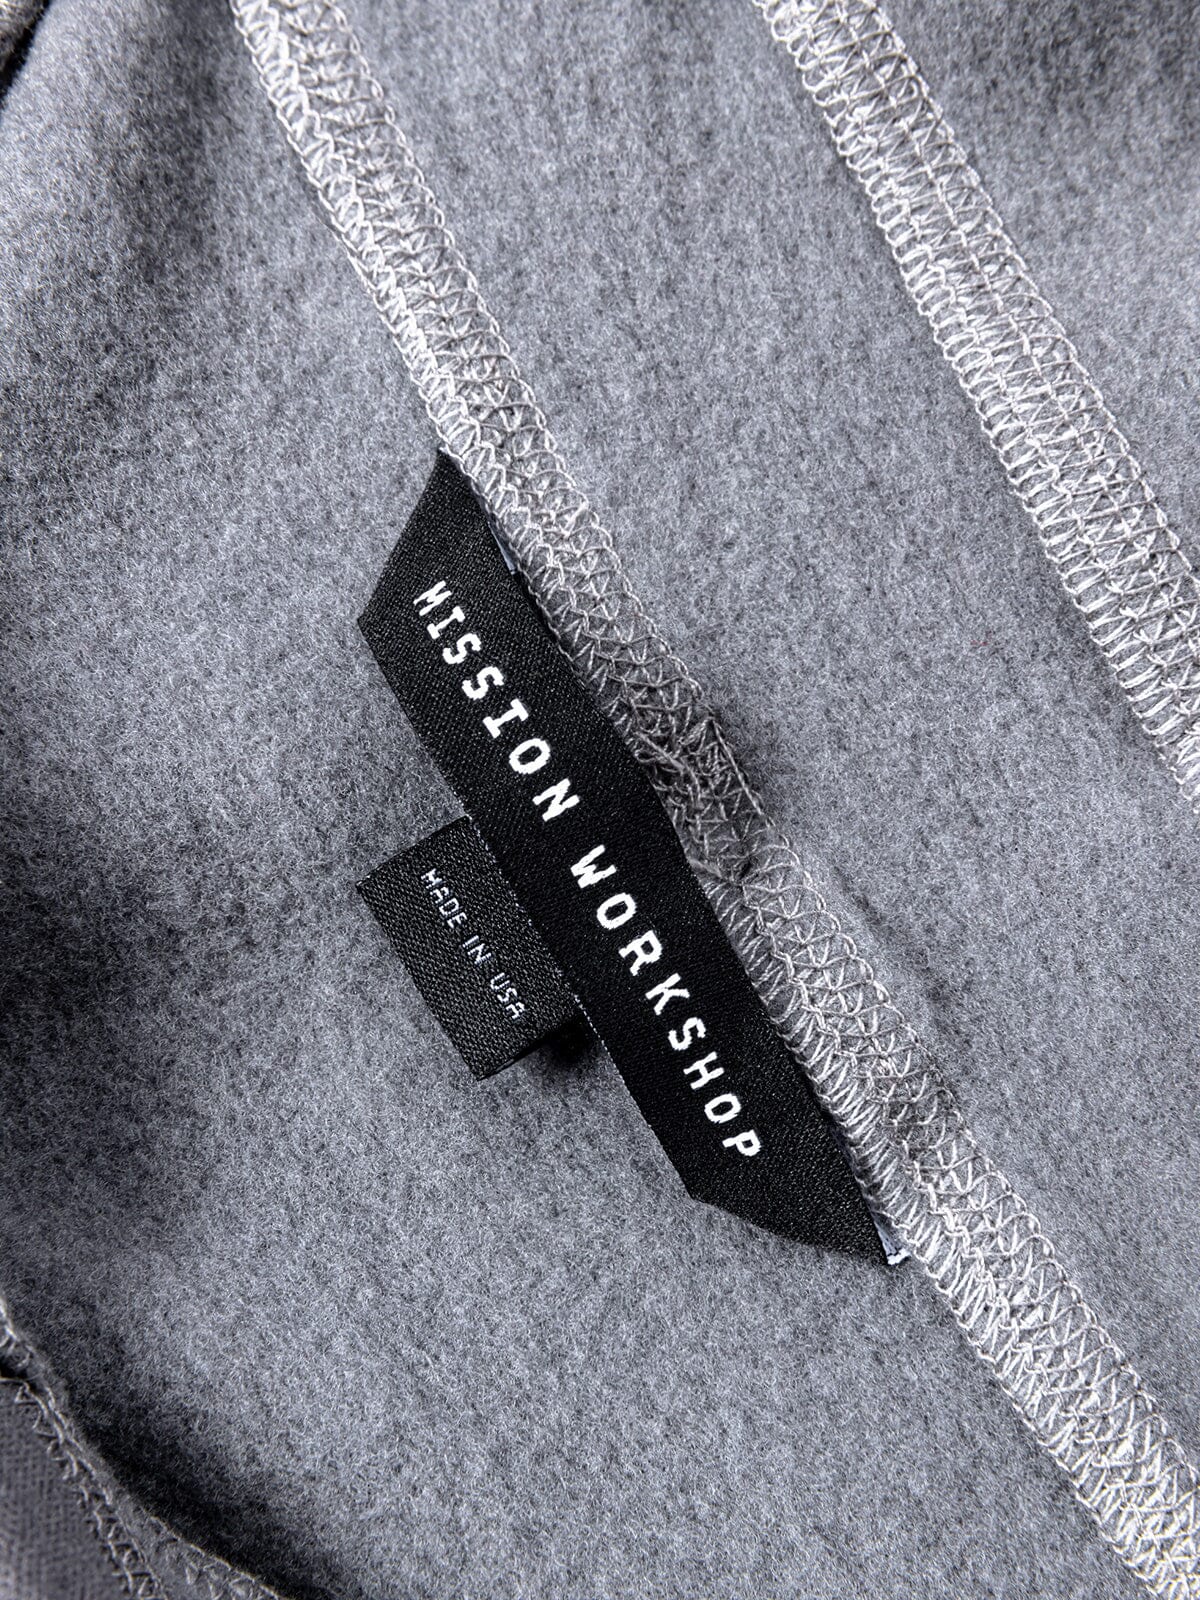 Faroe : Power Wool by Mission Workshop - Wetterfeste Taschen und technische Bekleidung - San Francisco & Los Angeles - Für die Ewigkeit gebaut - Garantiert